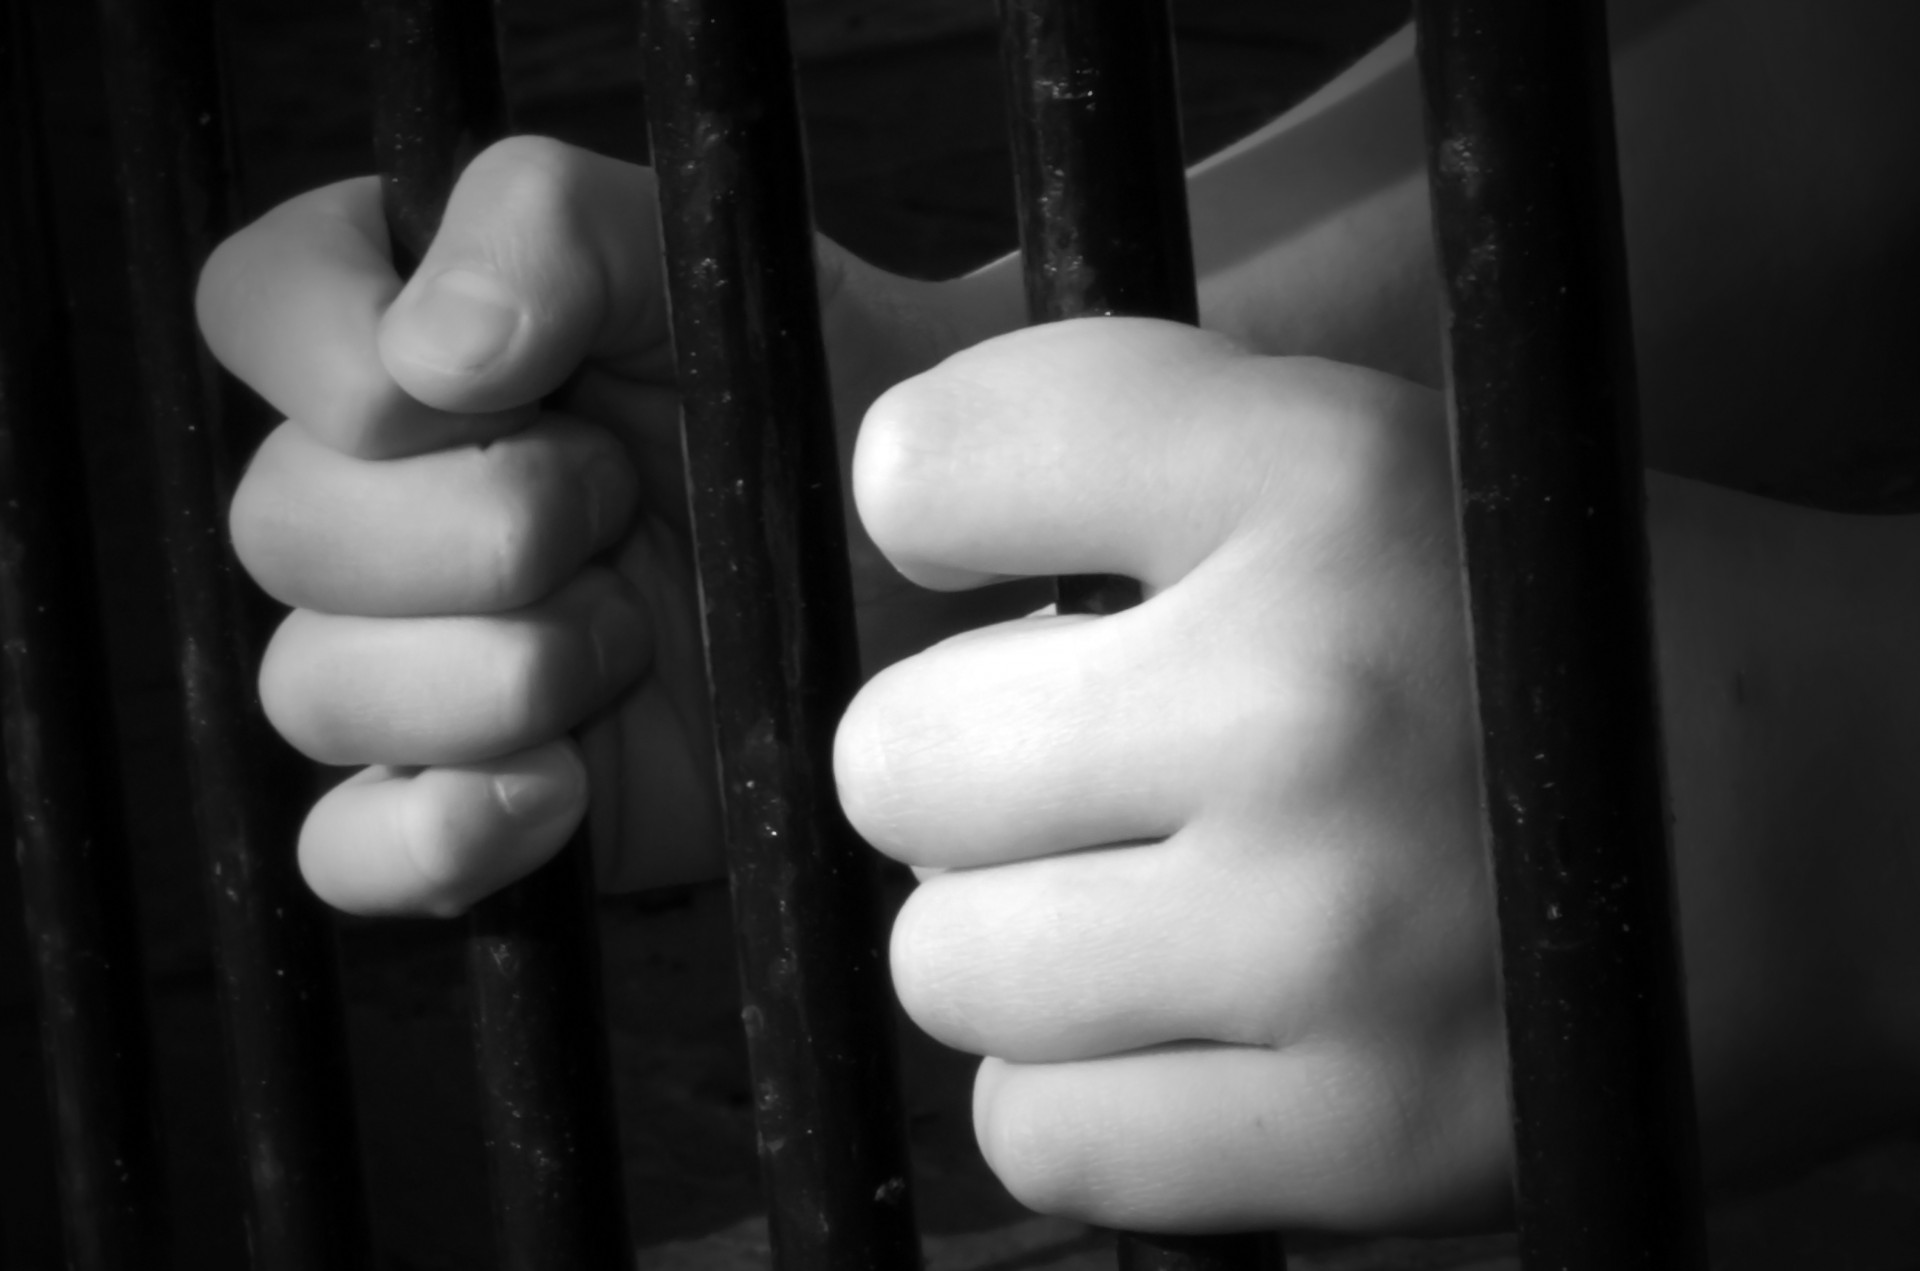 Arrestan a policía por presunto abuso sexual contra niña de 4 años